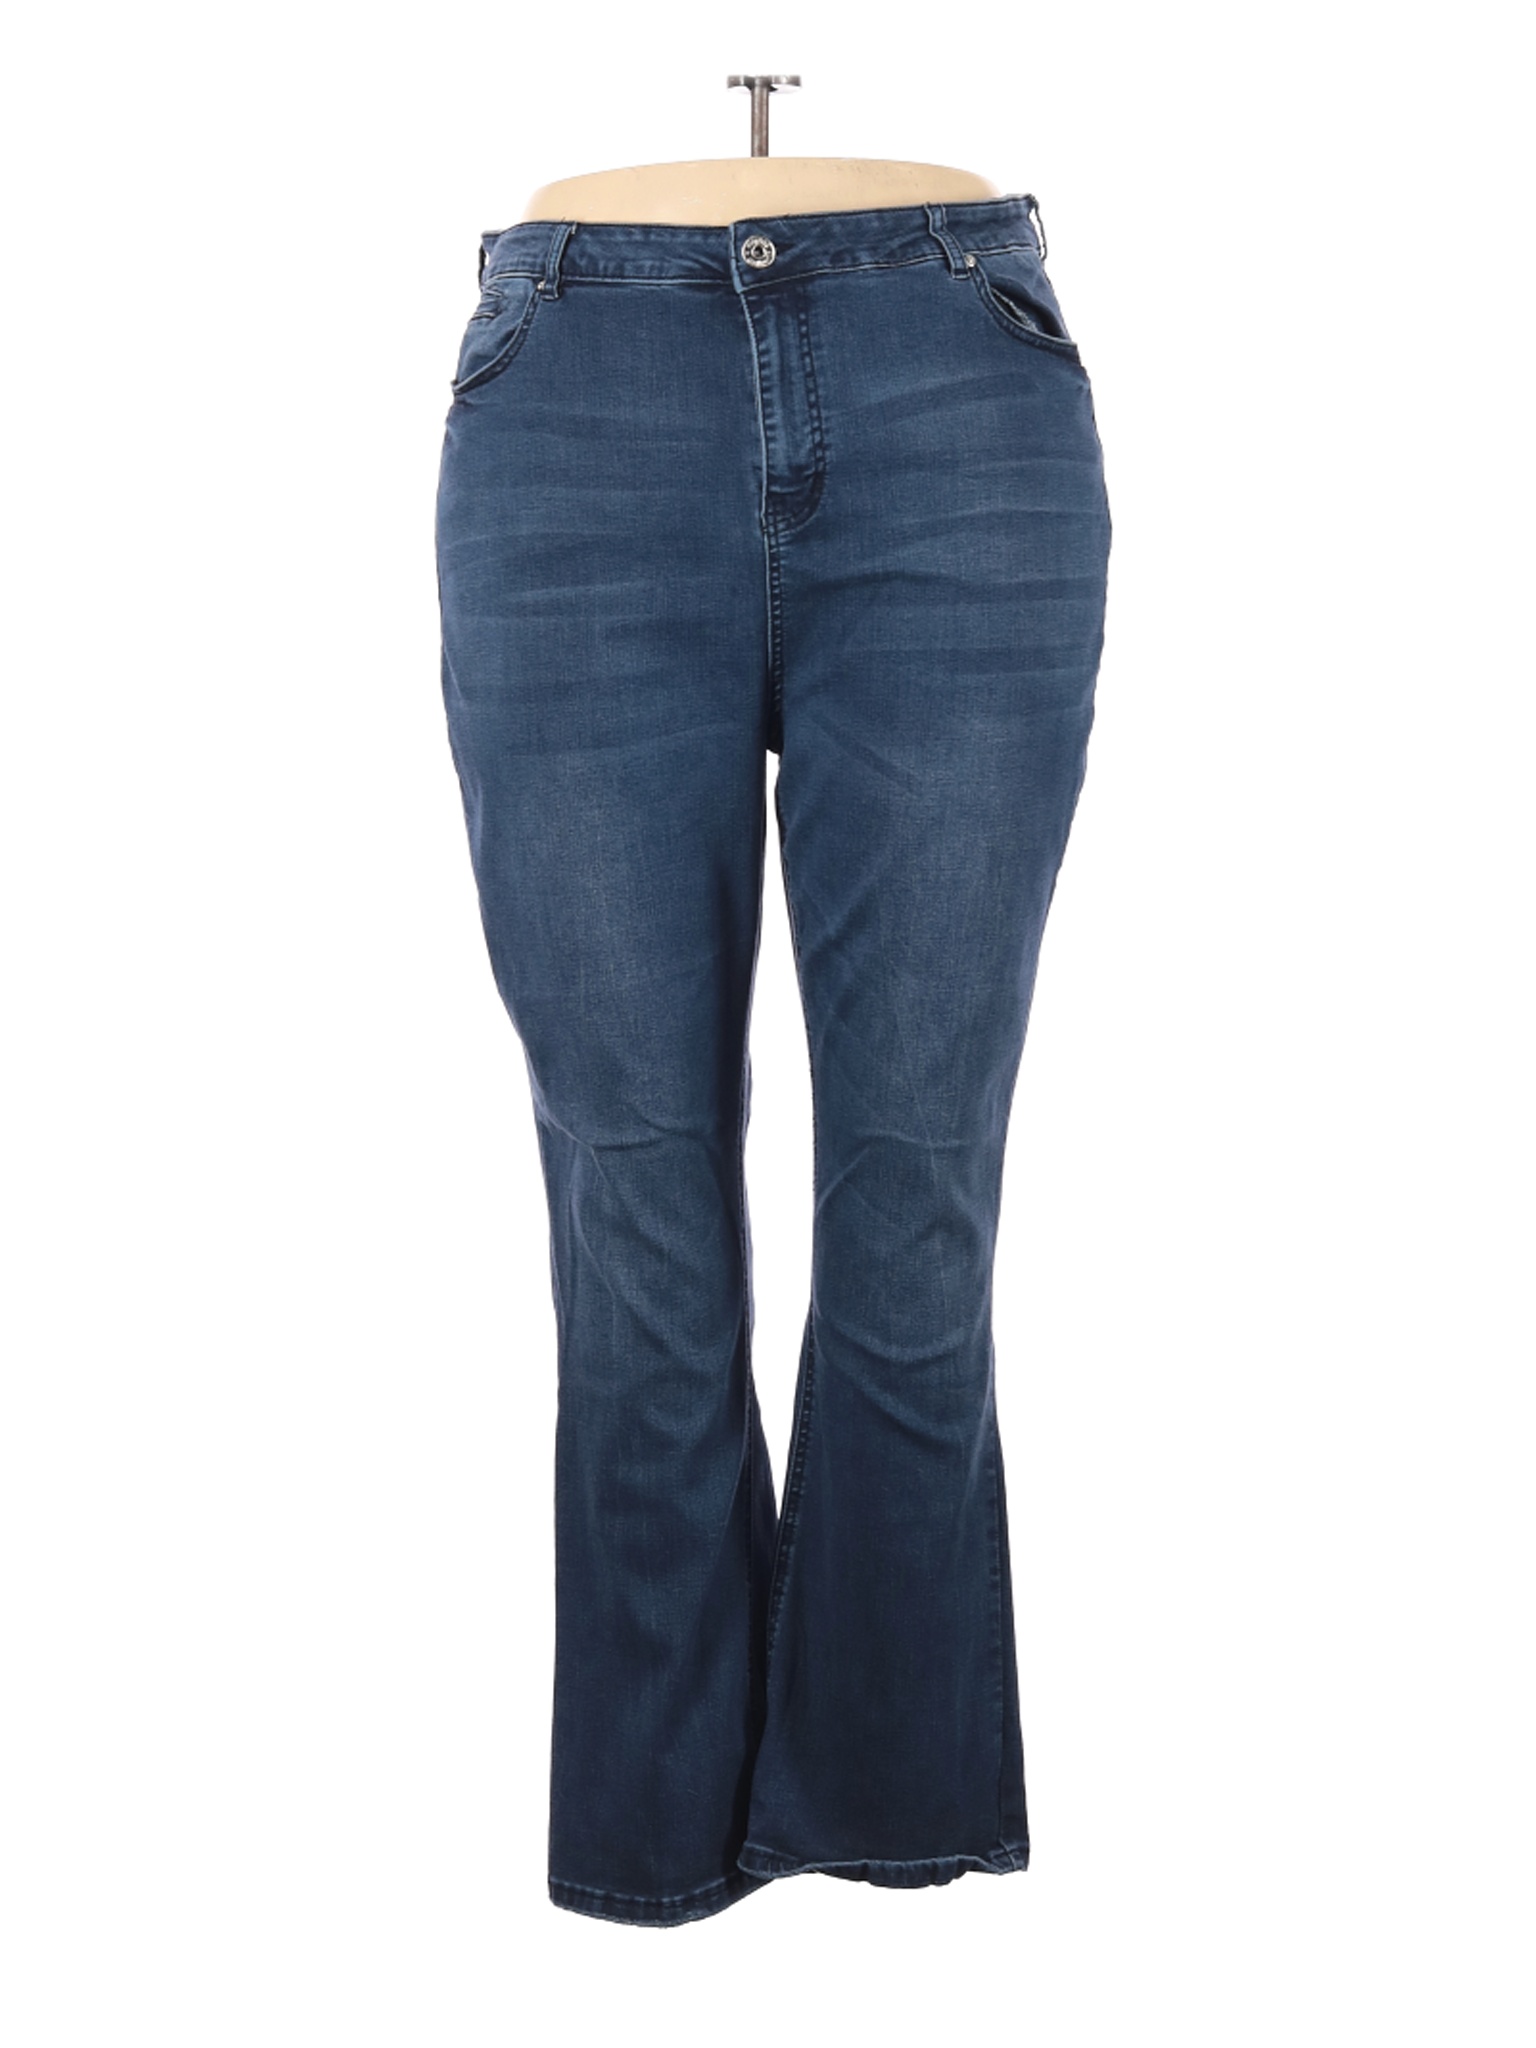 Morgan & Walker Women Blue Jeans 26 Plus | eBay